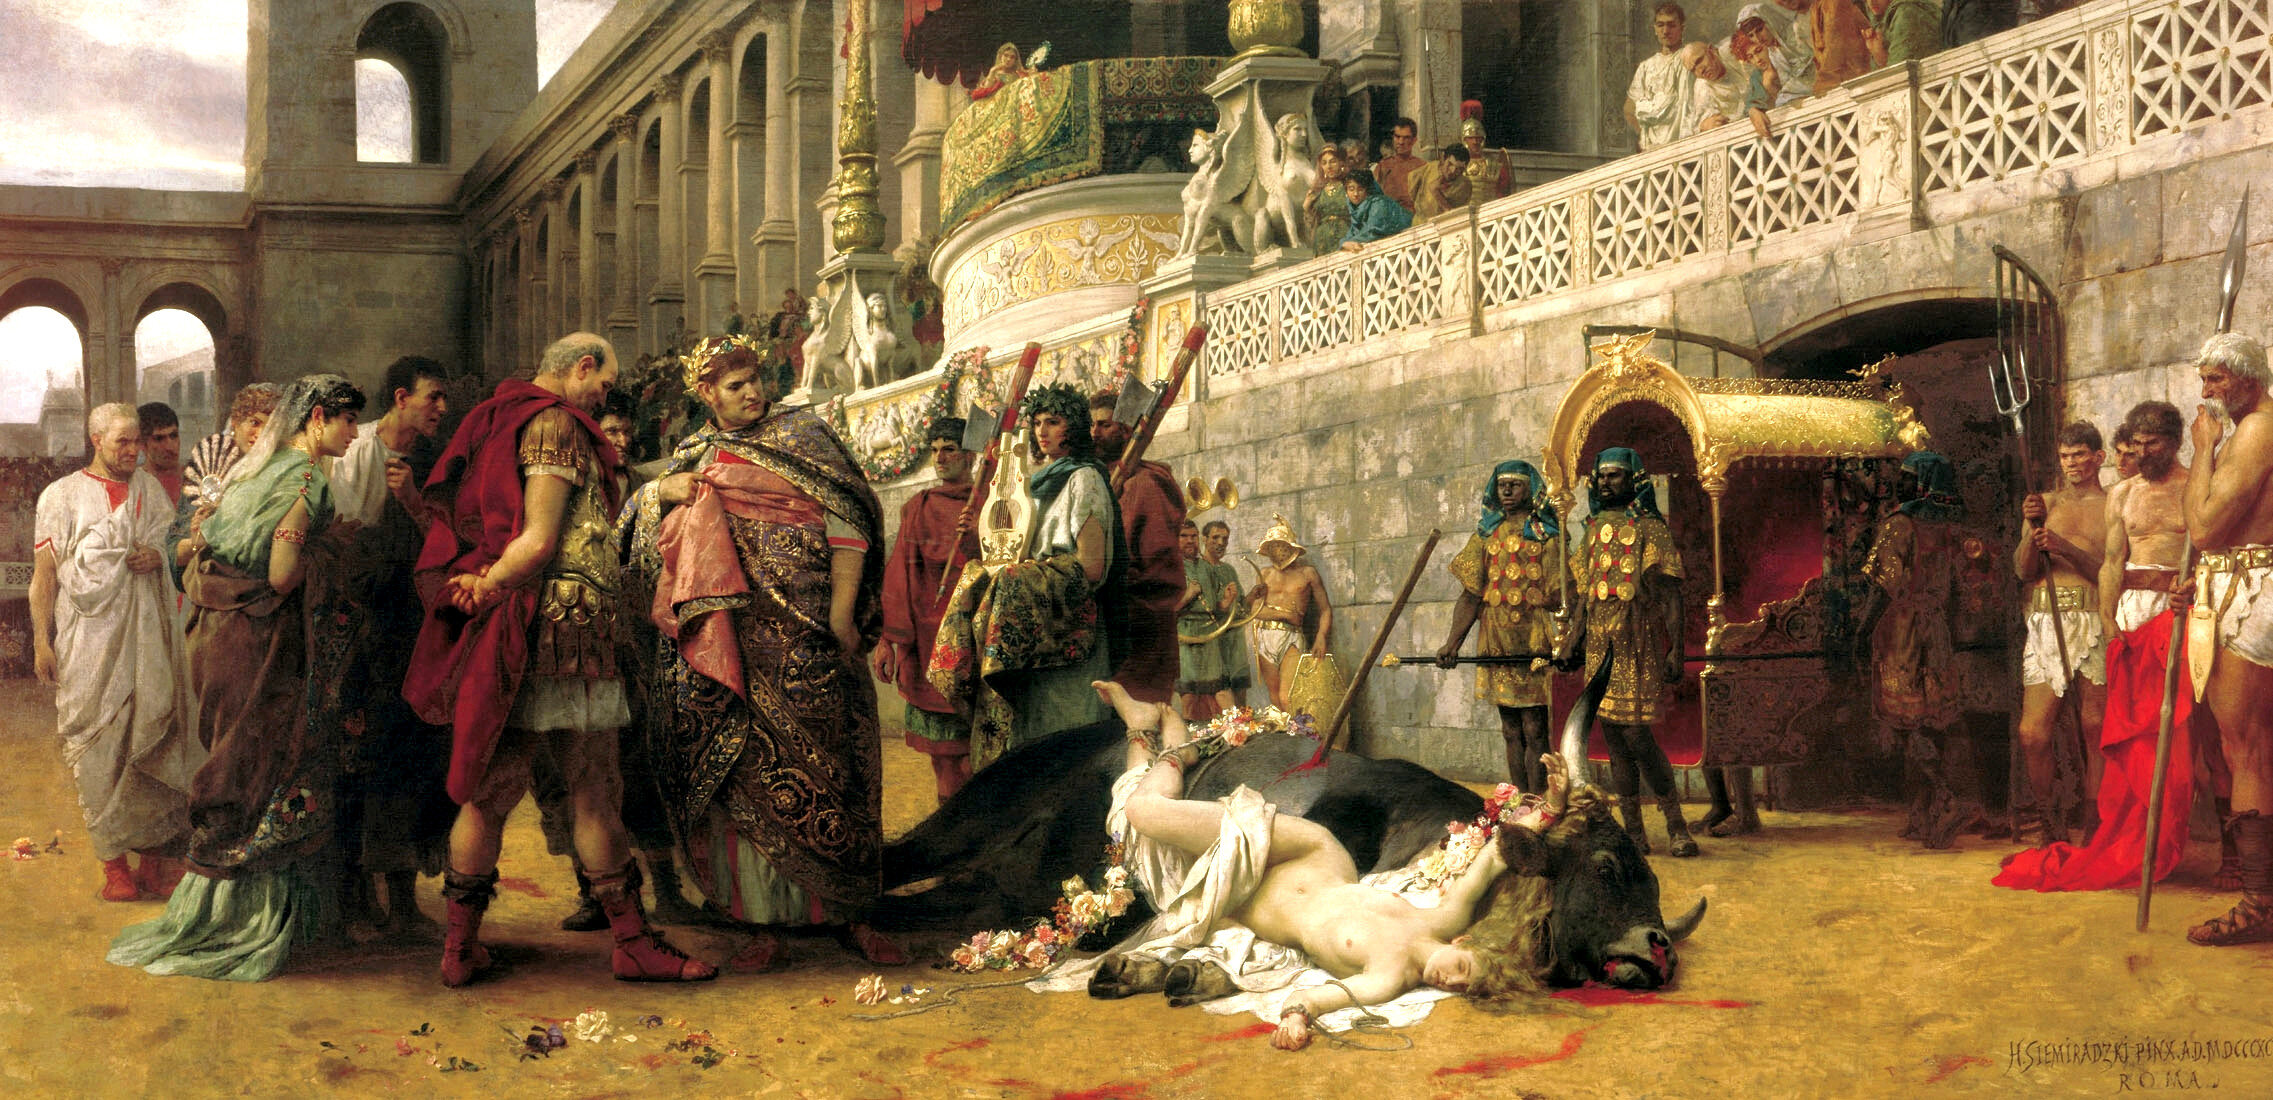 Neron na obrazie Henryka Siemiradzkiego "Dirce chrześcijańska"